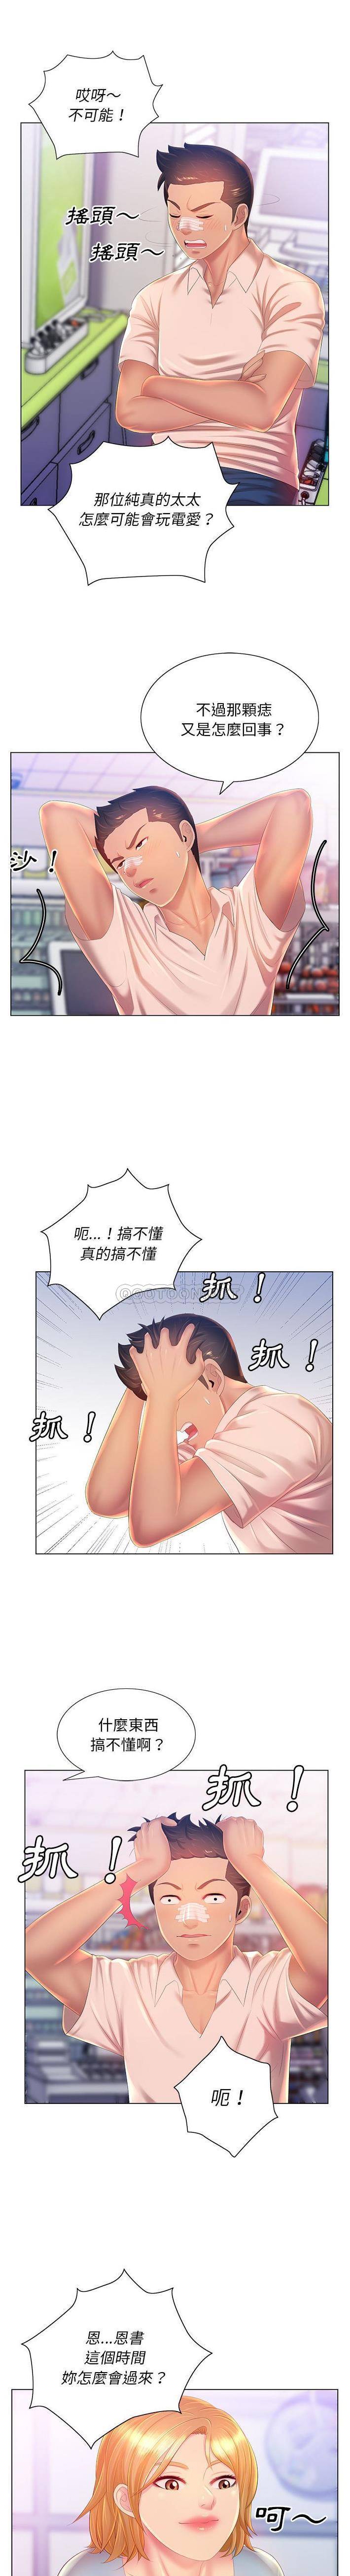 韩国污漫画 魔性嗓音 第13话 14